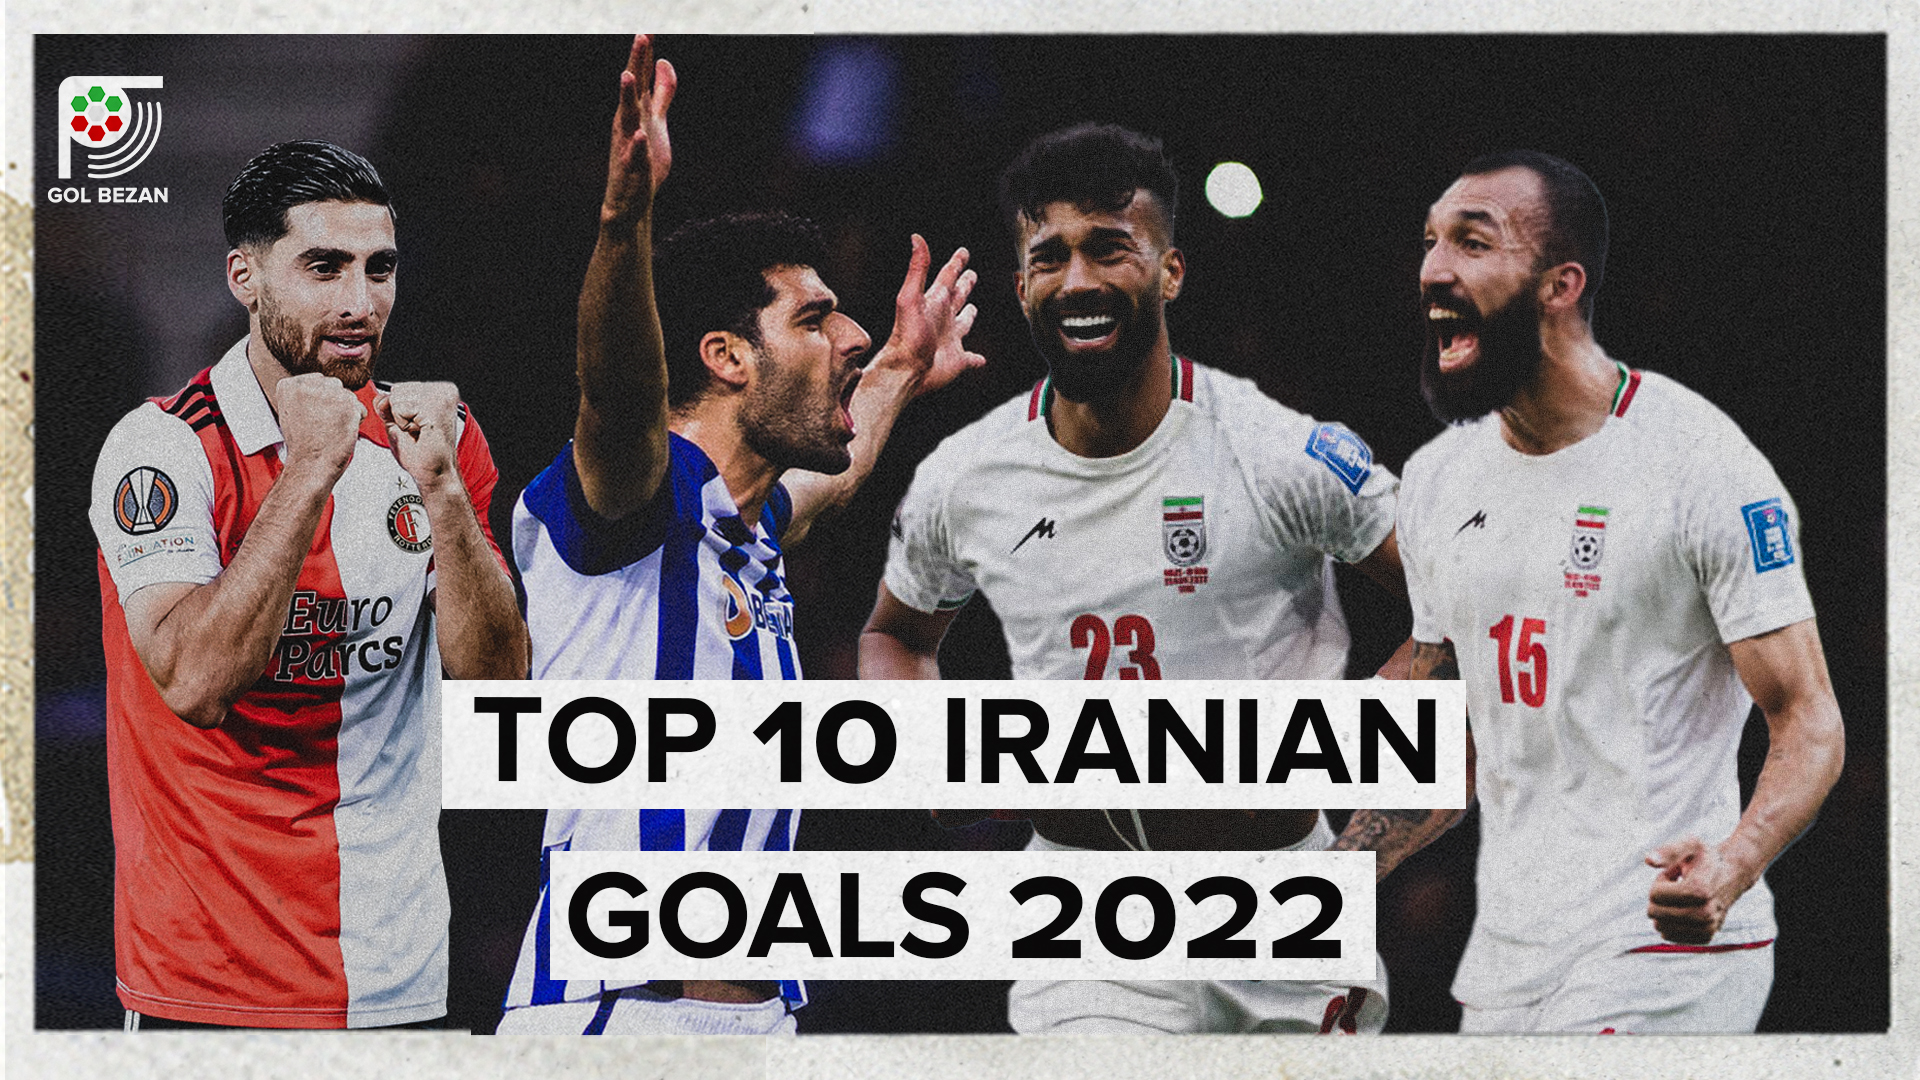 TOP 10 IRANIAN GOALS 2022